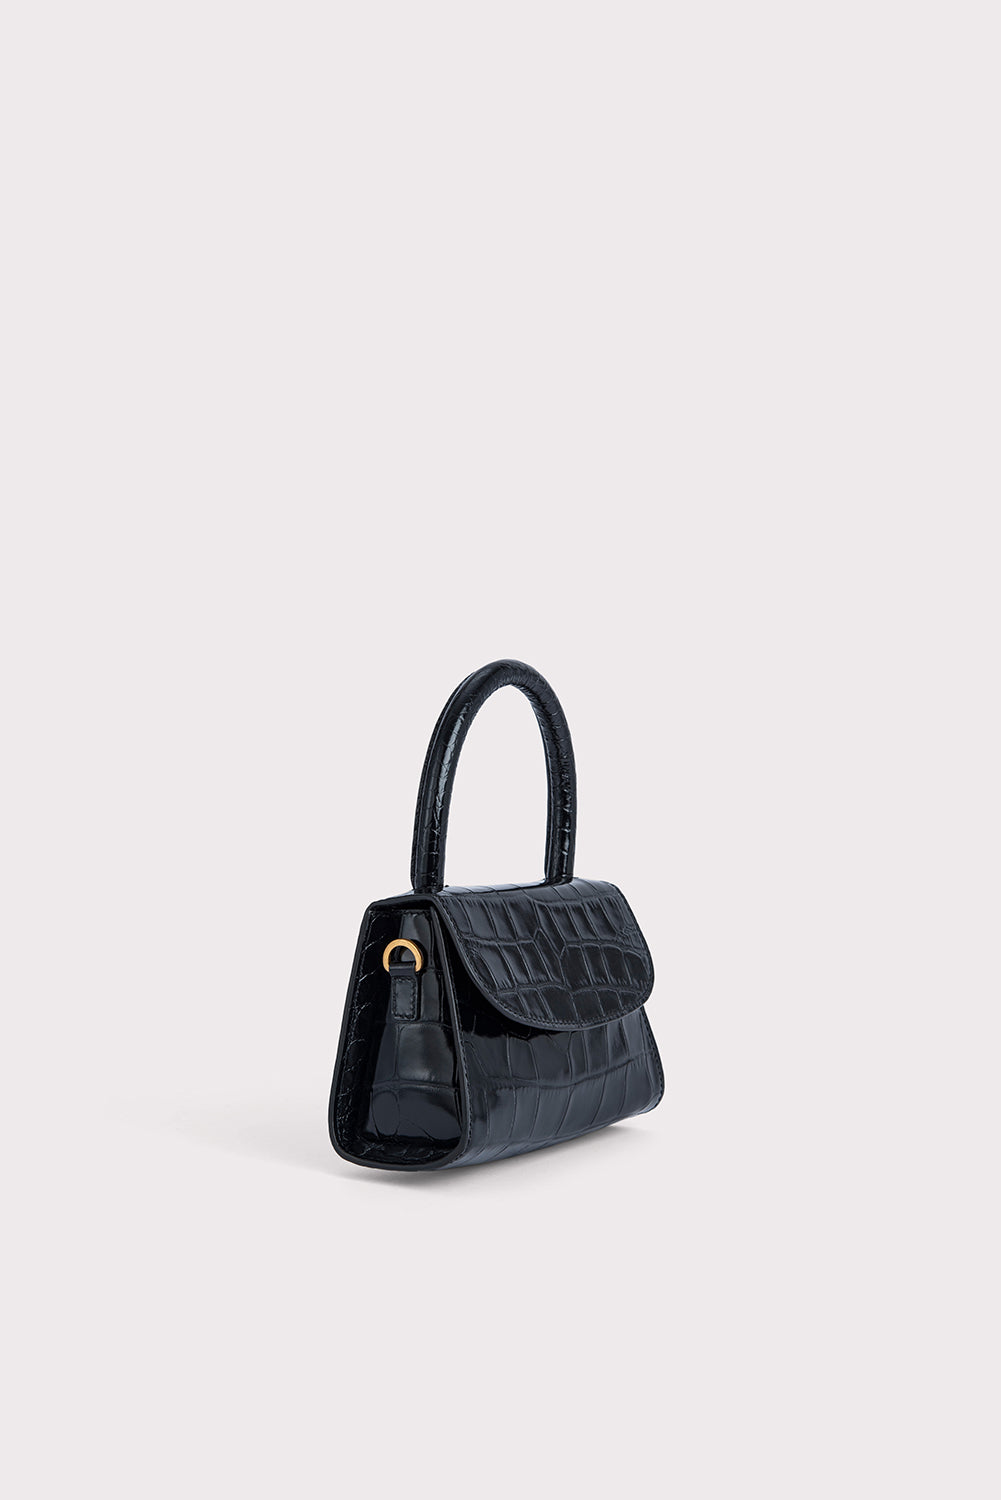 Khadim Brown Mini Bag for Women